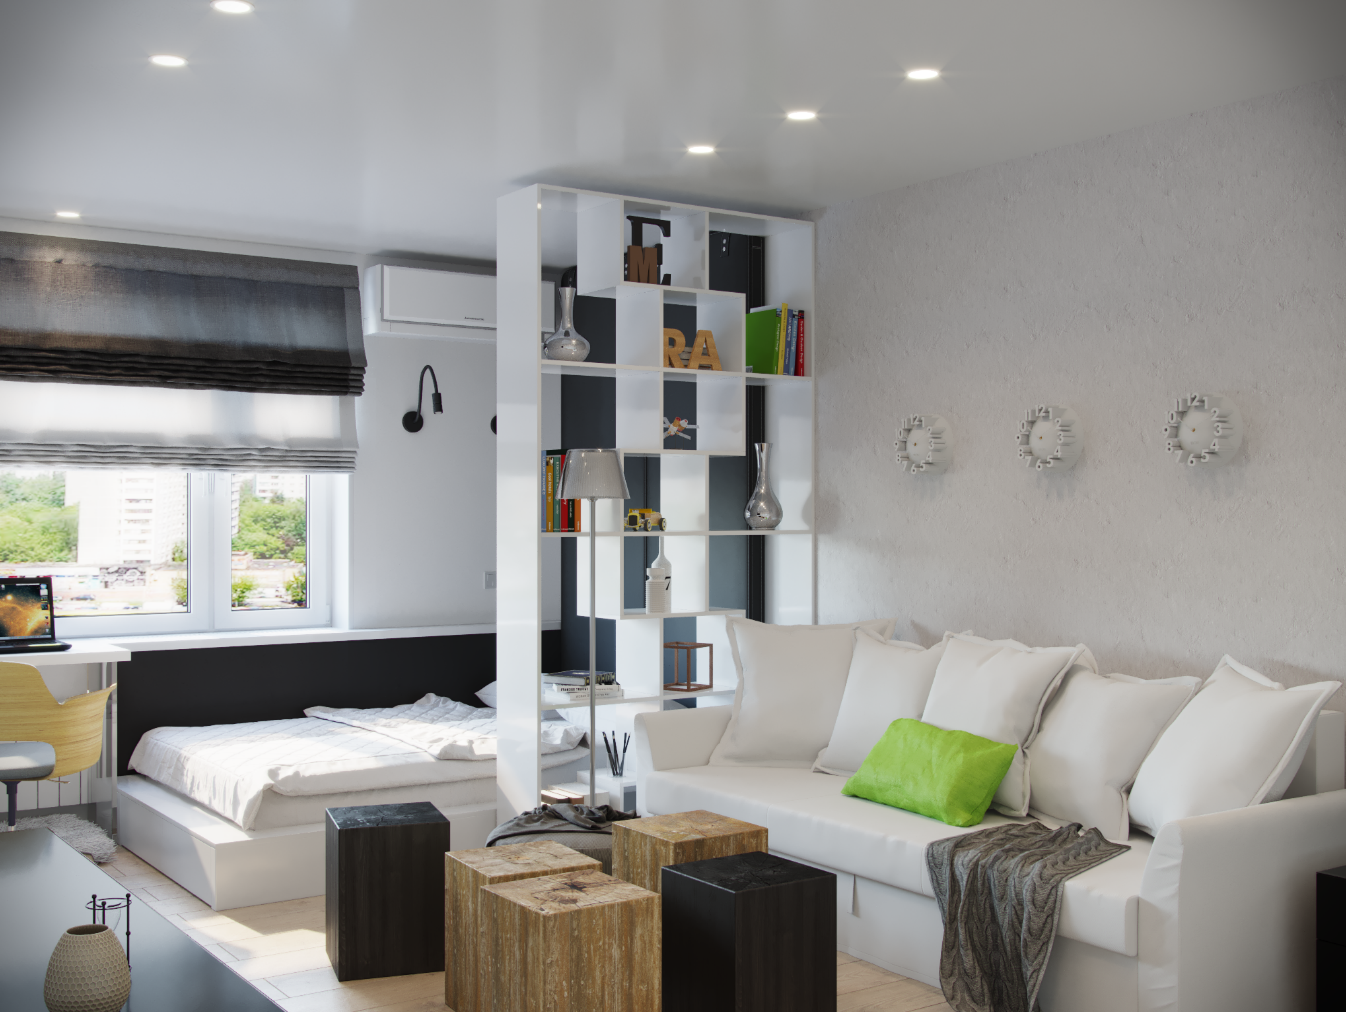 Гостиная и спальня в одной комнате: 6 идей для зонирования пространства - nelli mikhailova